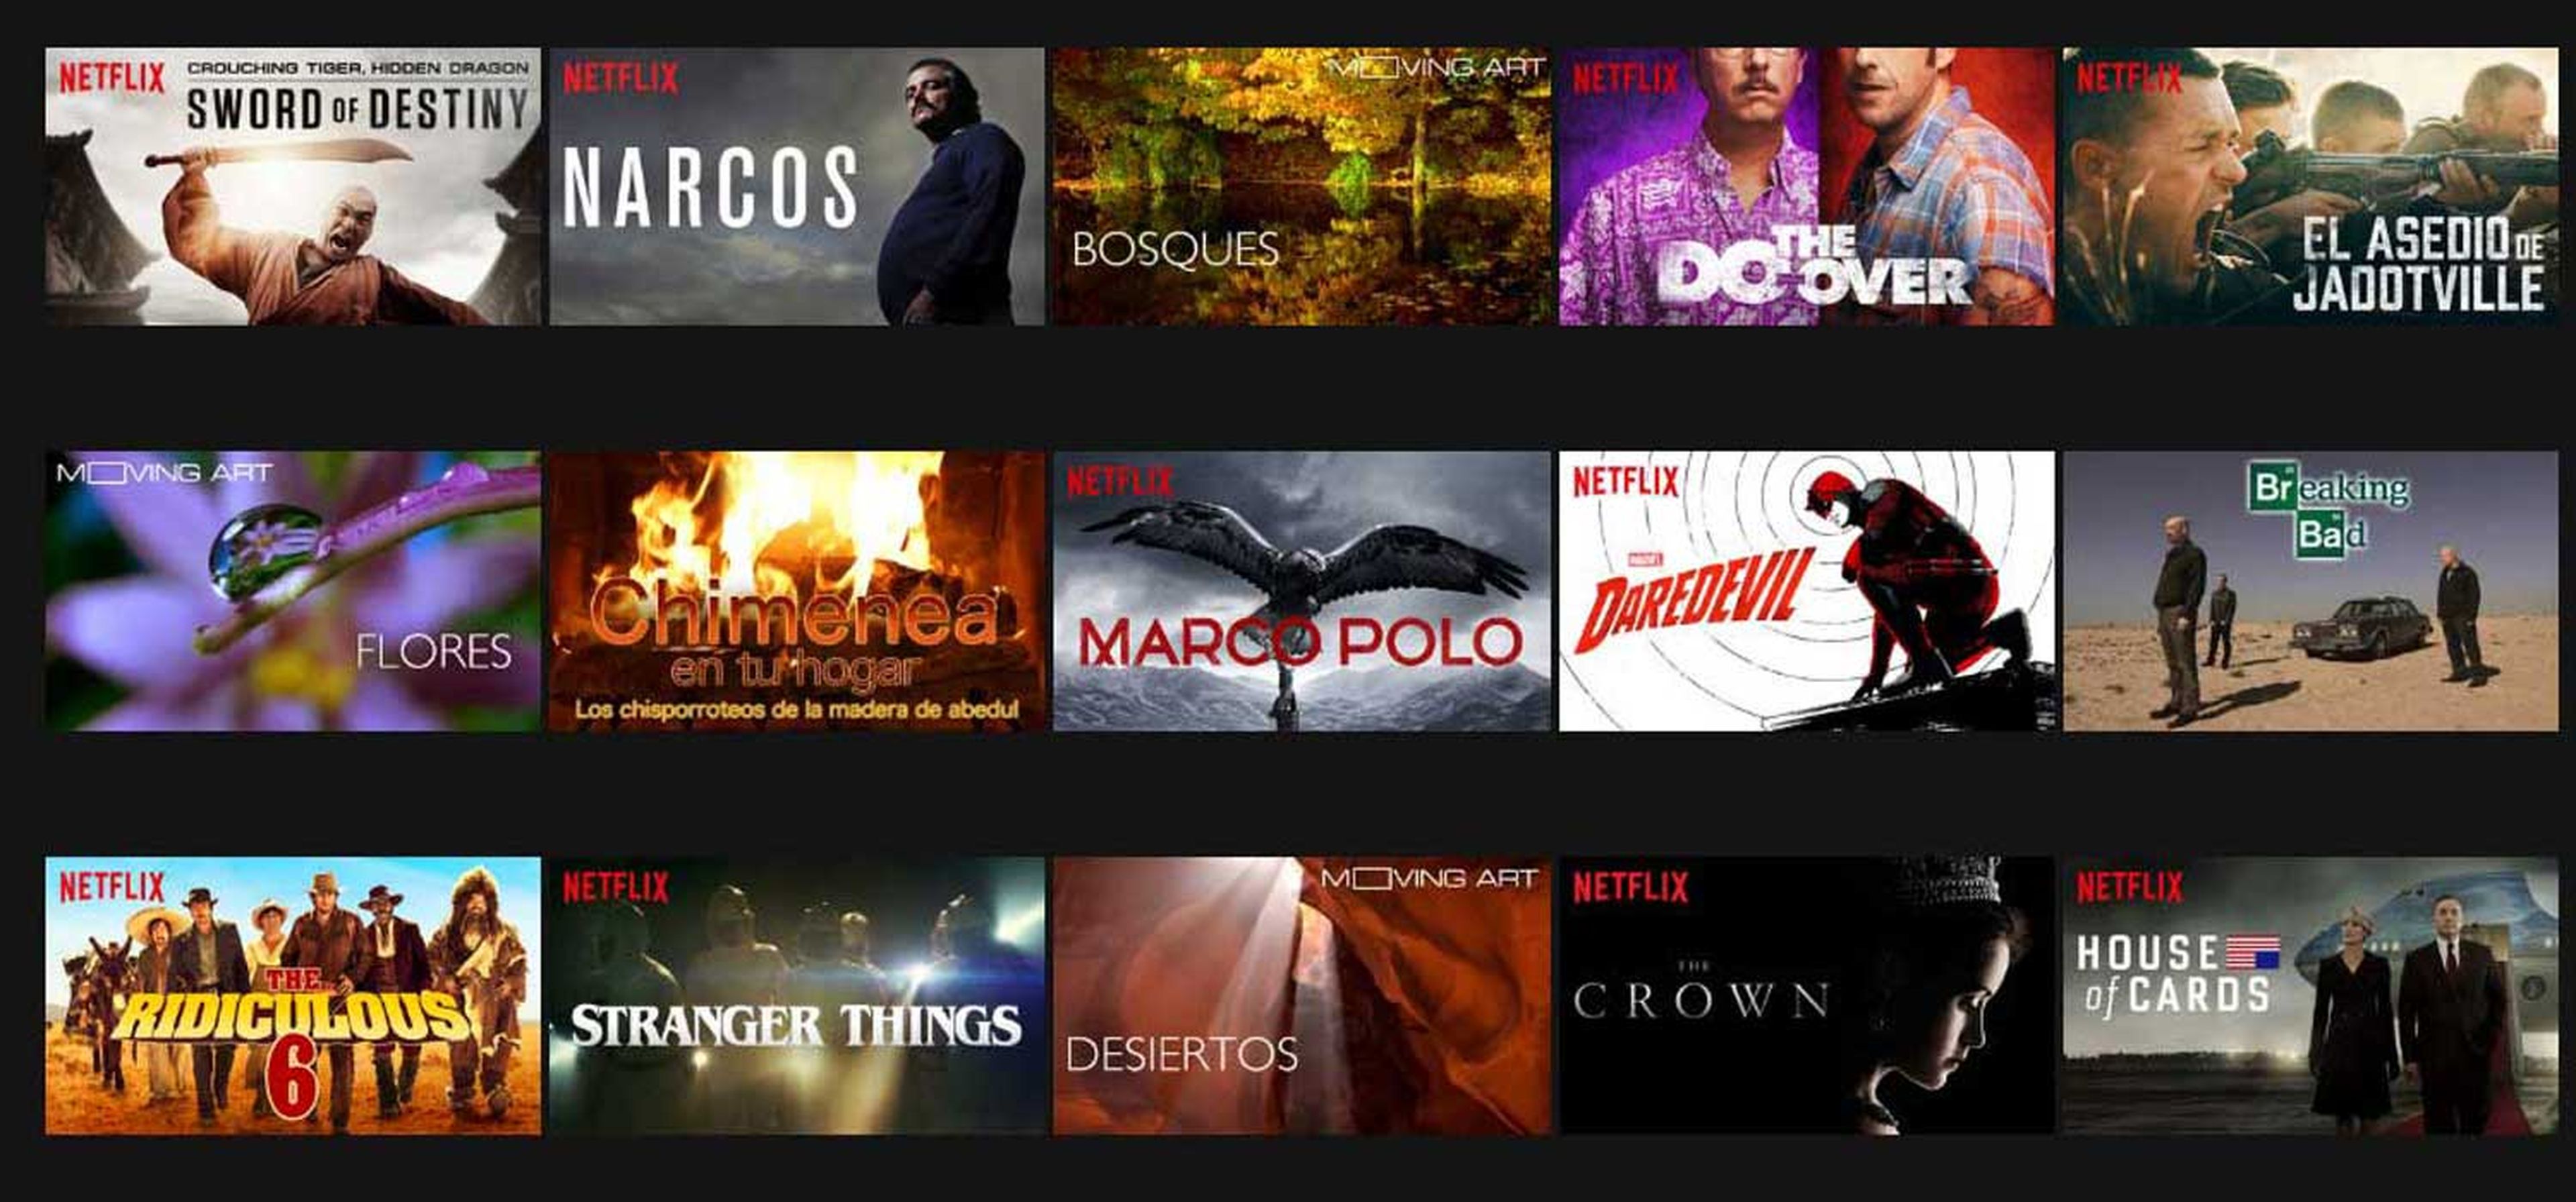 Netflix - ¿Qué contenidos están 4K para series y películas?